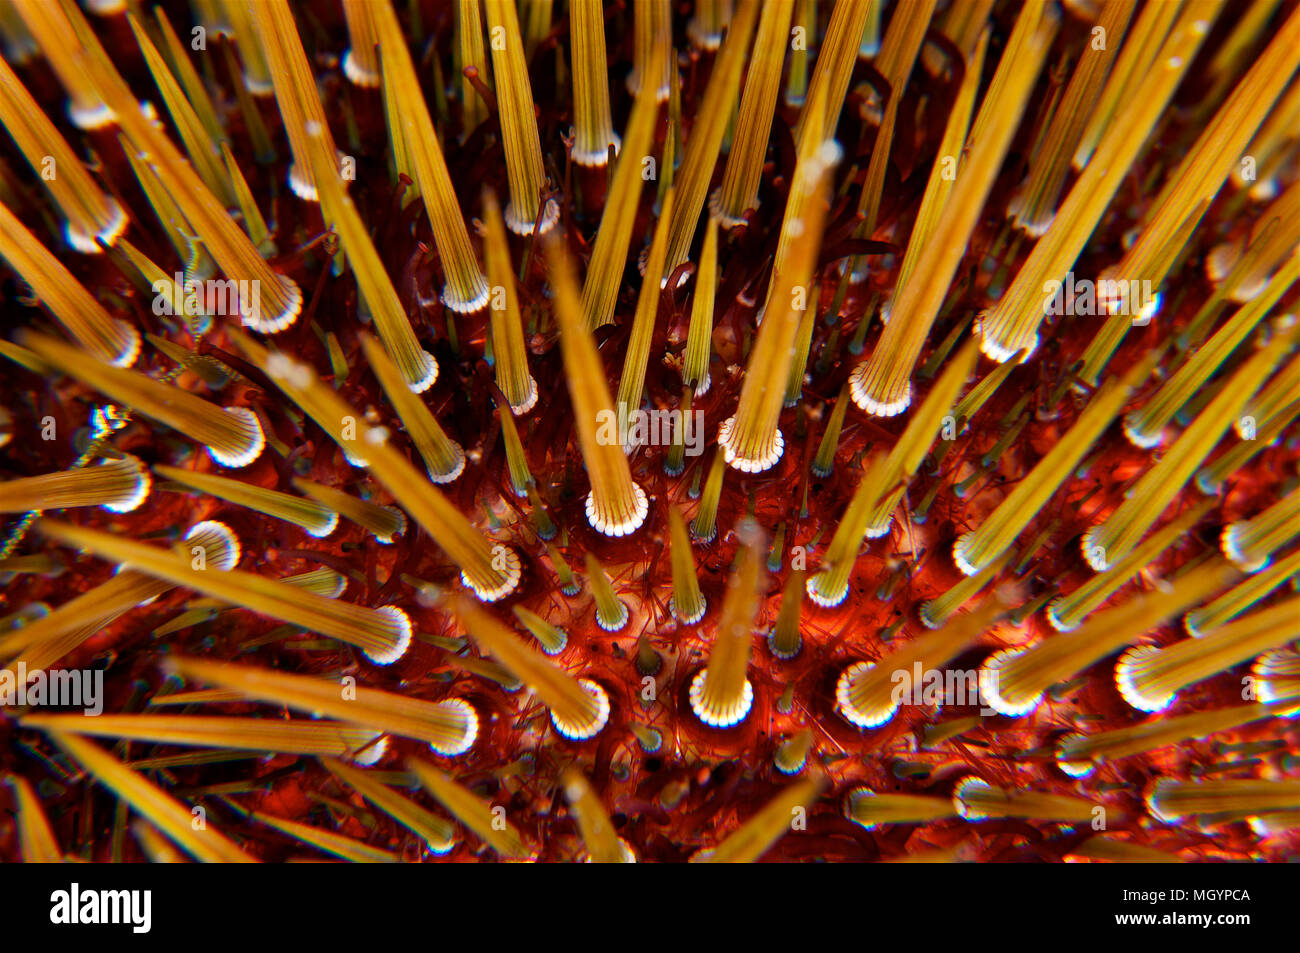 Unterwasseraufnahme der Stacheln eines purpurnen Seeigels (Paracentrotus lividus) im mittelmeer (Mallorca, Balearen, Spanien) Stockfoto